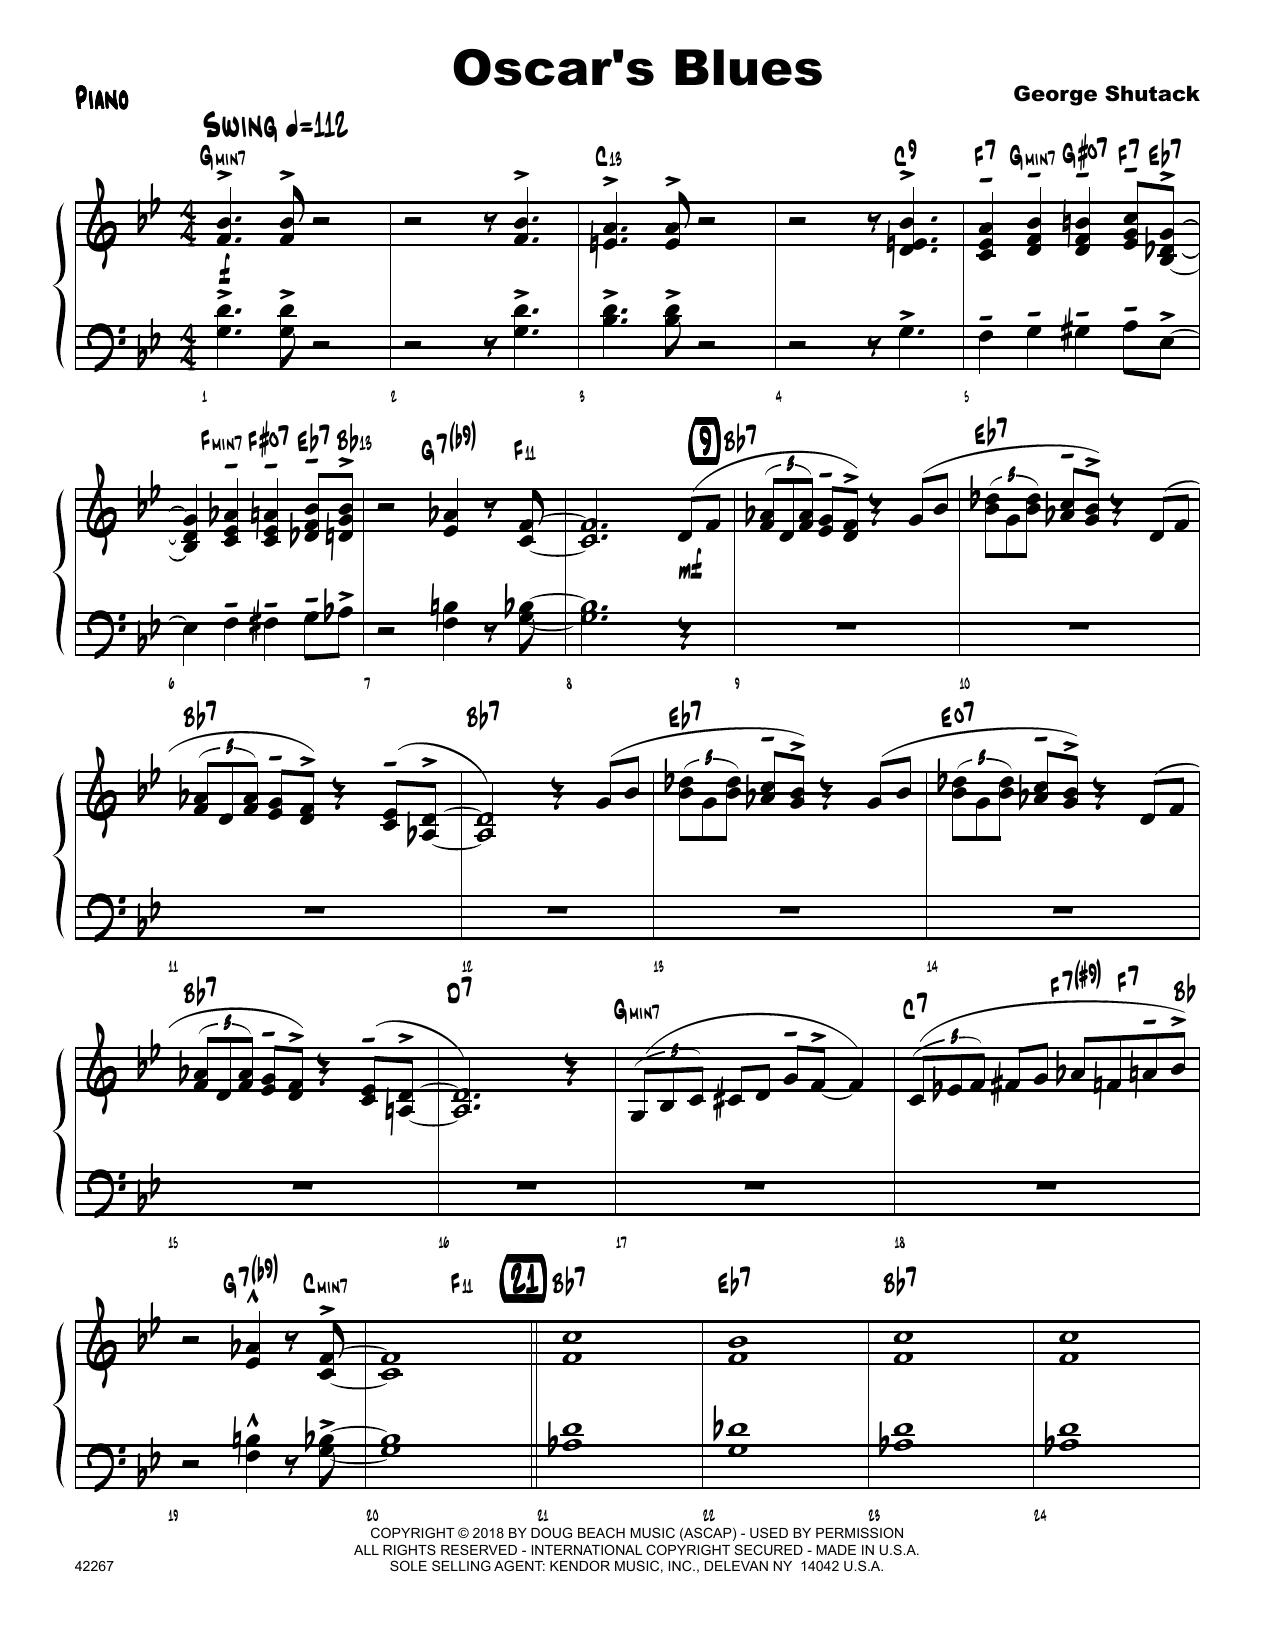 Download George Shutack Oscar's Blues - Piano Sheet Music